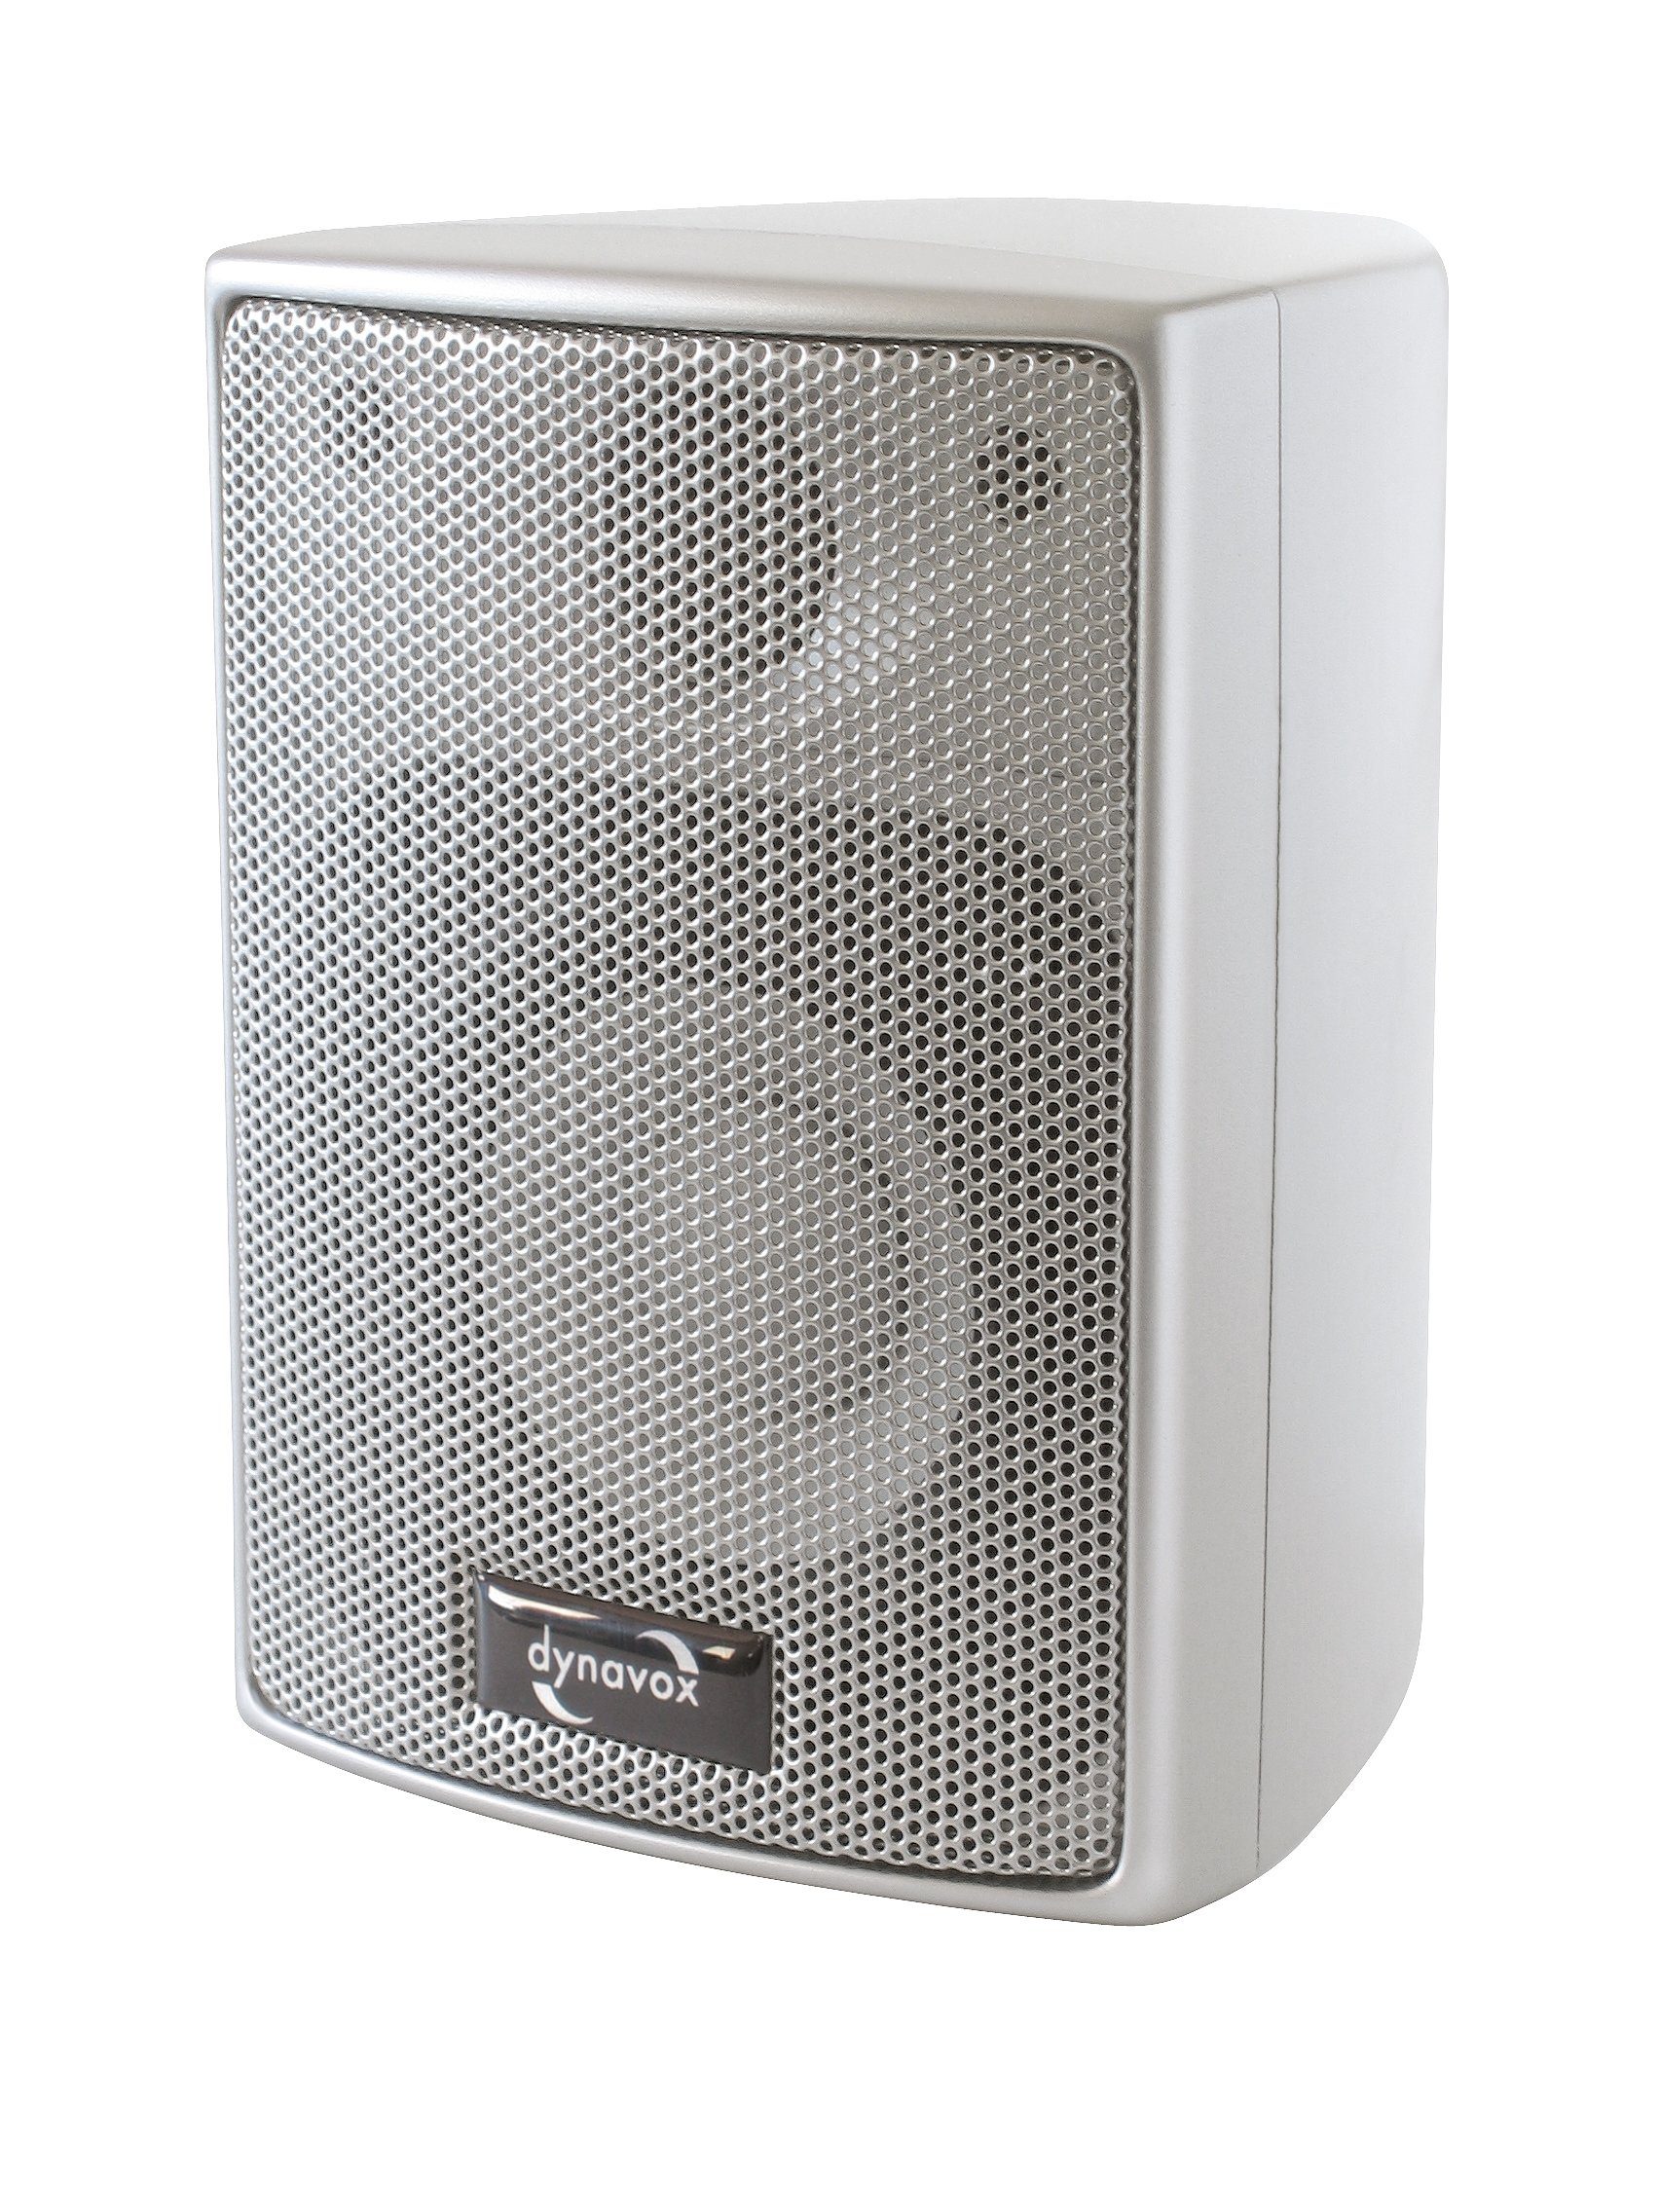 Dynavox AS 301 Lautsprecher (60 W, Paar, für Heimkino oder Büro, kompakte Surround-Box, Wandmontage) Silber